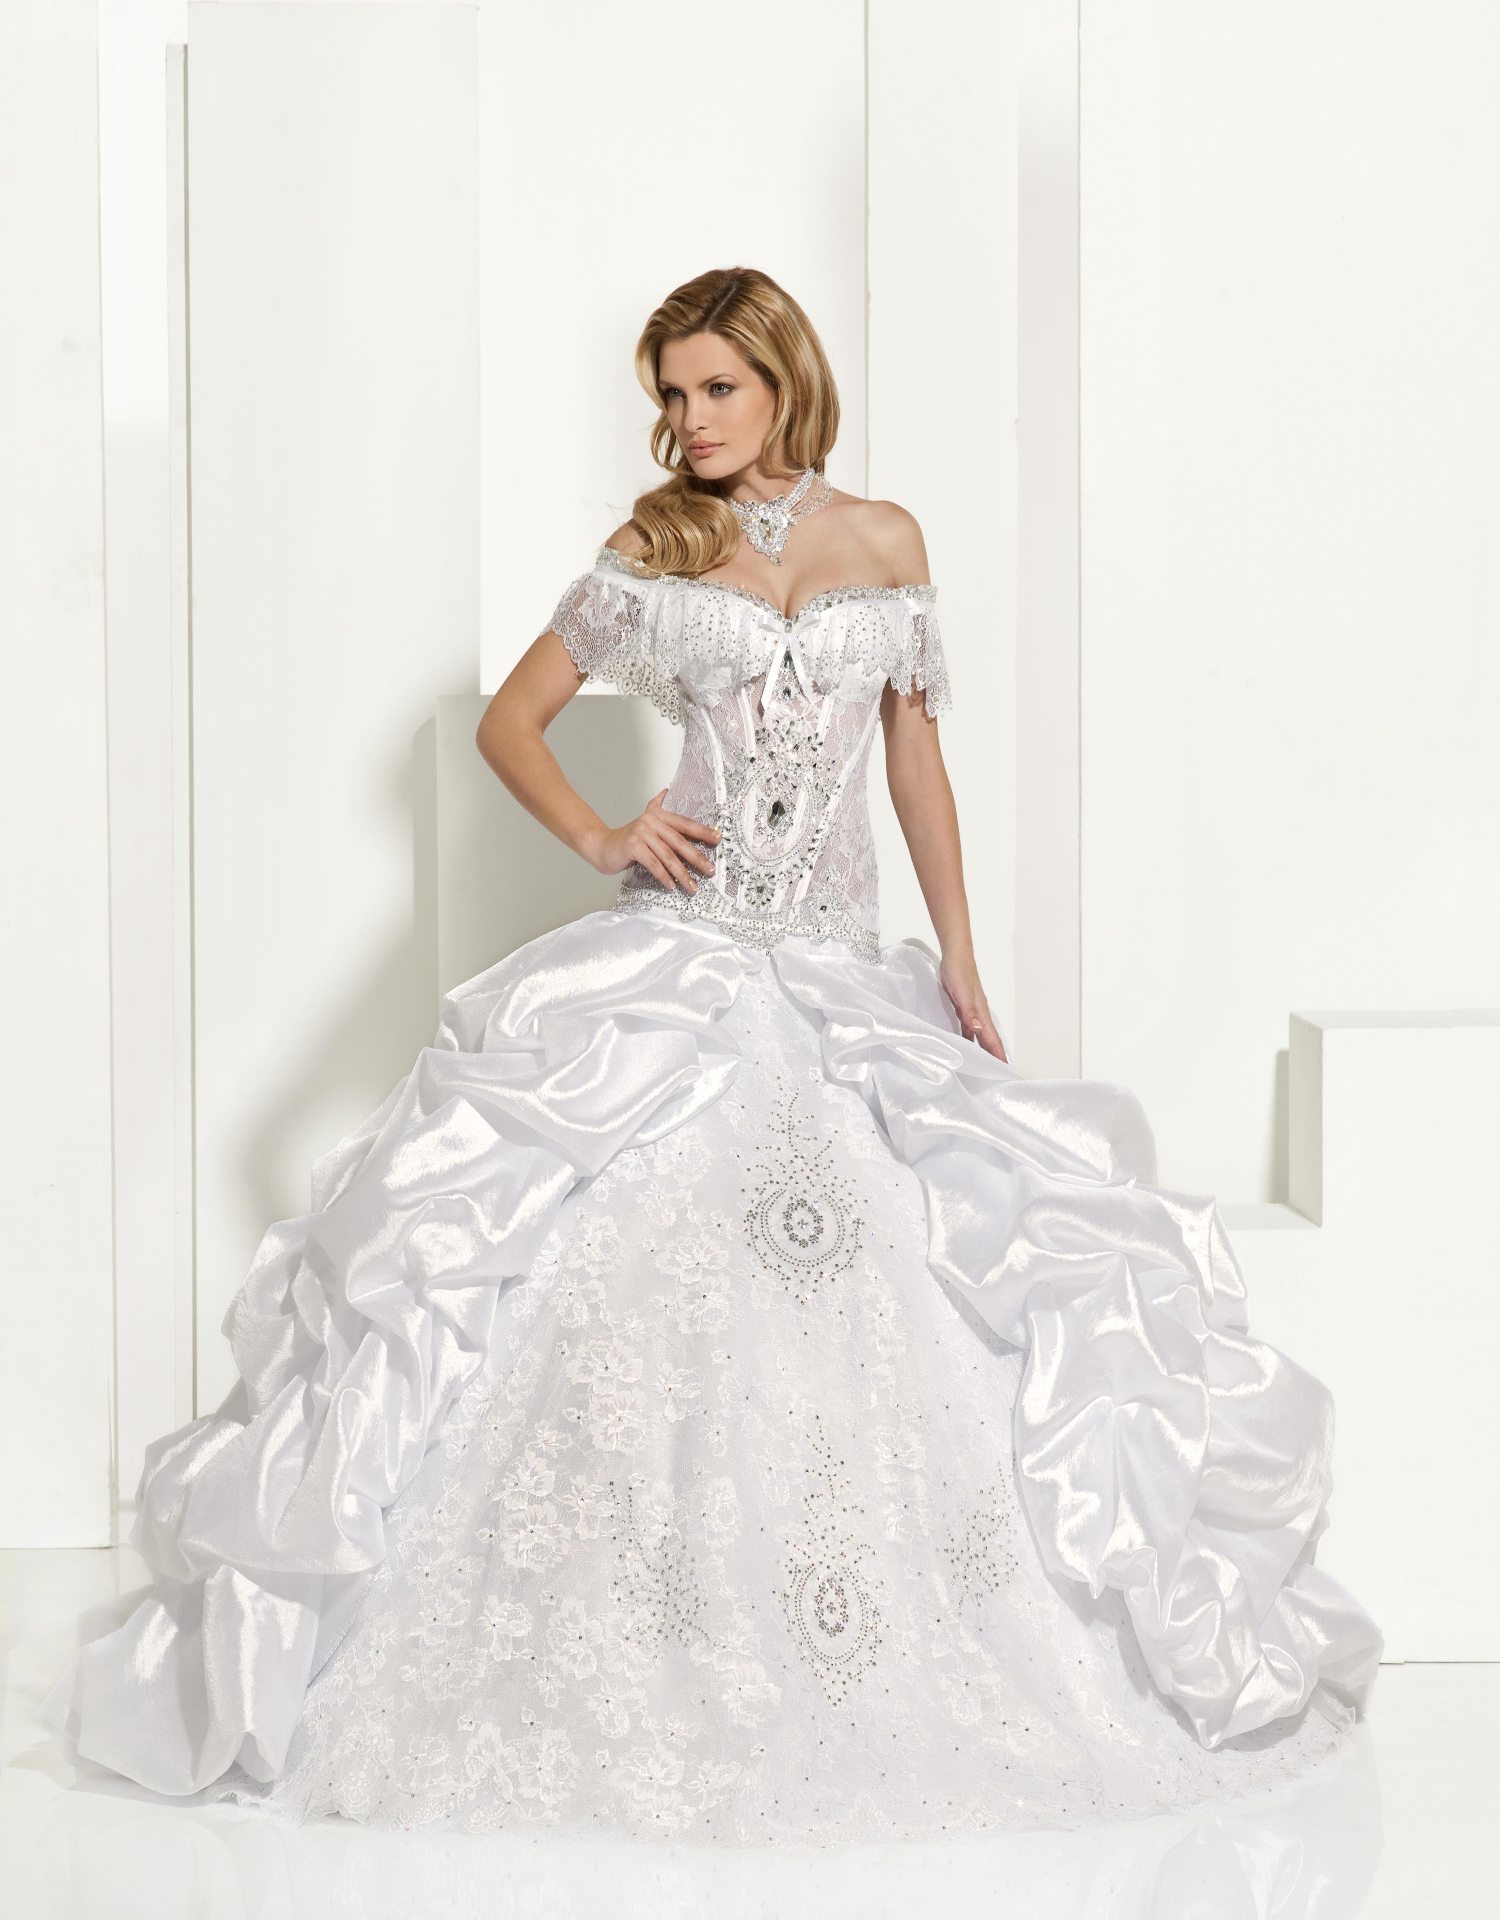 Wedding Dress - Lady Macelina - Lady Macelina Skirt - Lady Macelina Necklace - Lady Isabelle Train | MyLady Bridal Gown